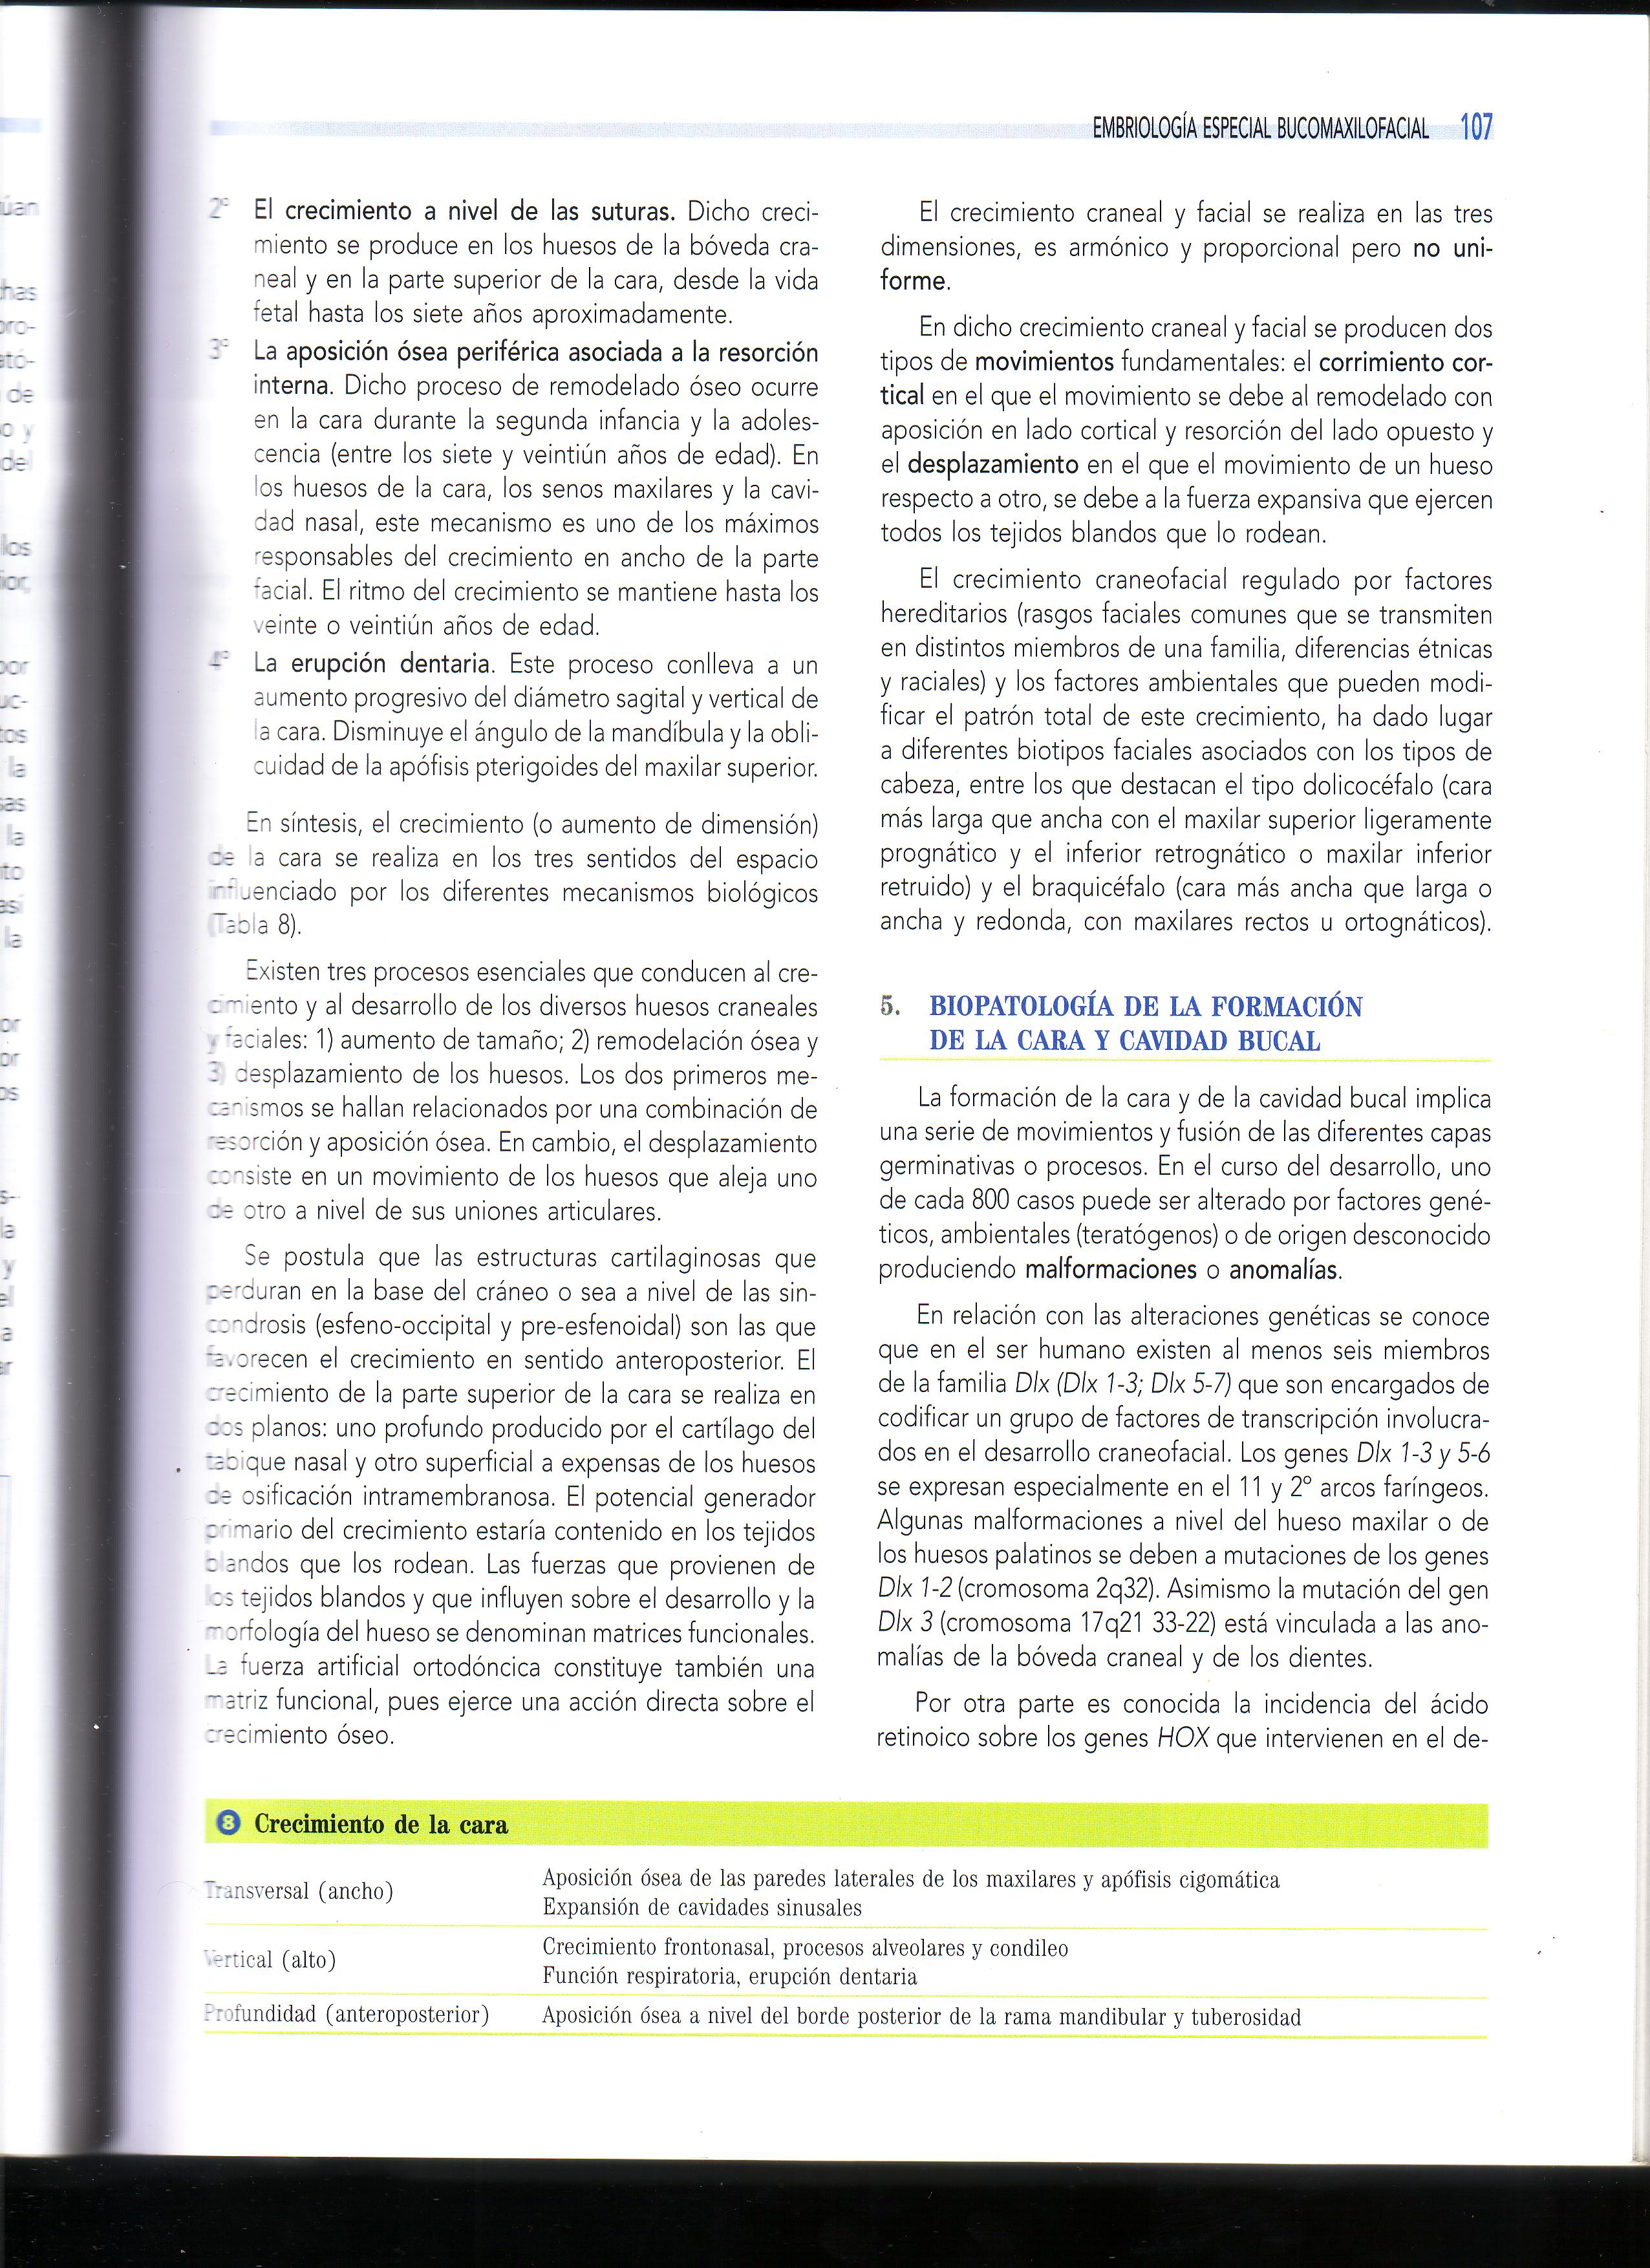 Capitulo 5 Embriologia Bucomaxilofacial Libro Gomez De Ferraris